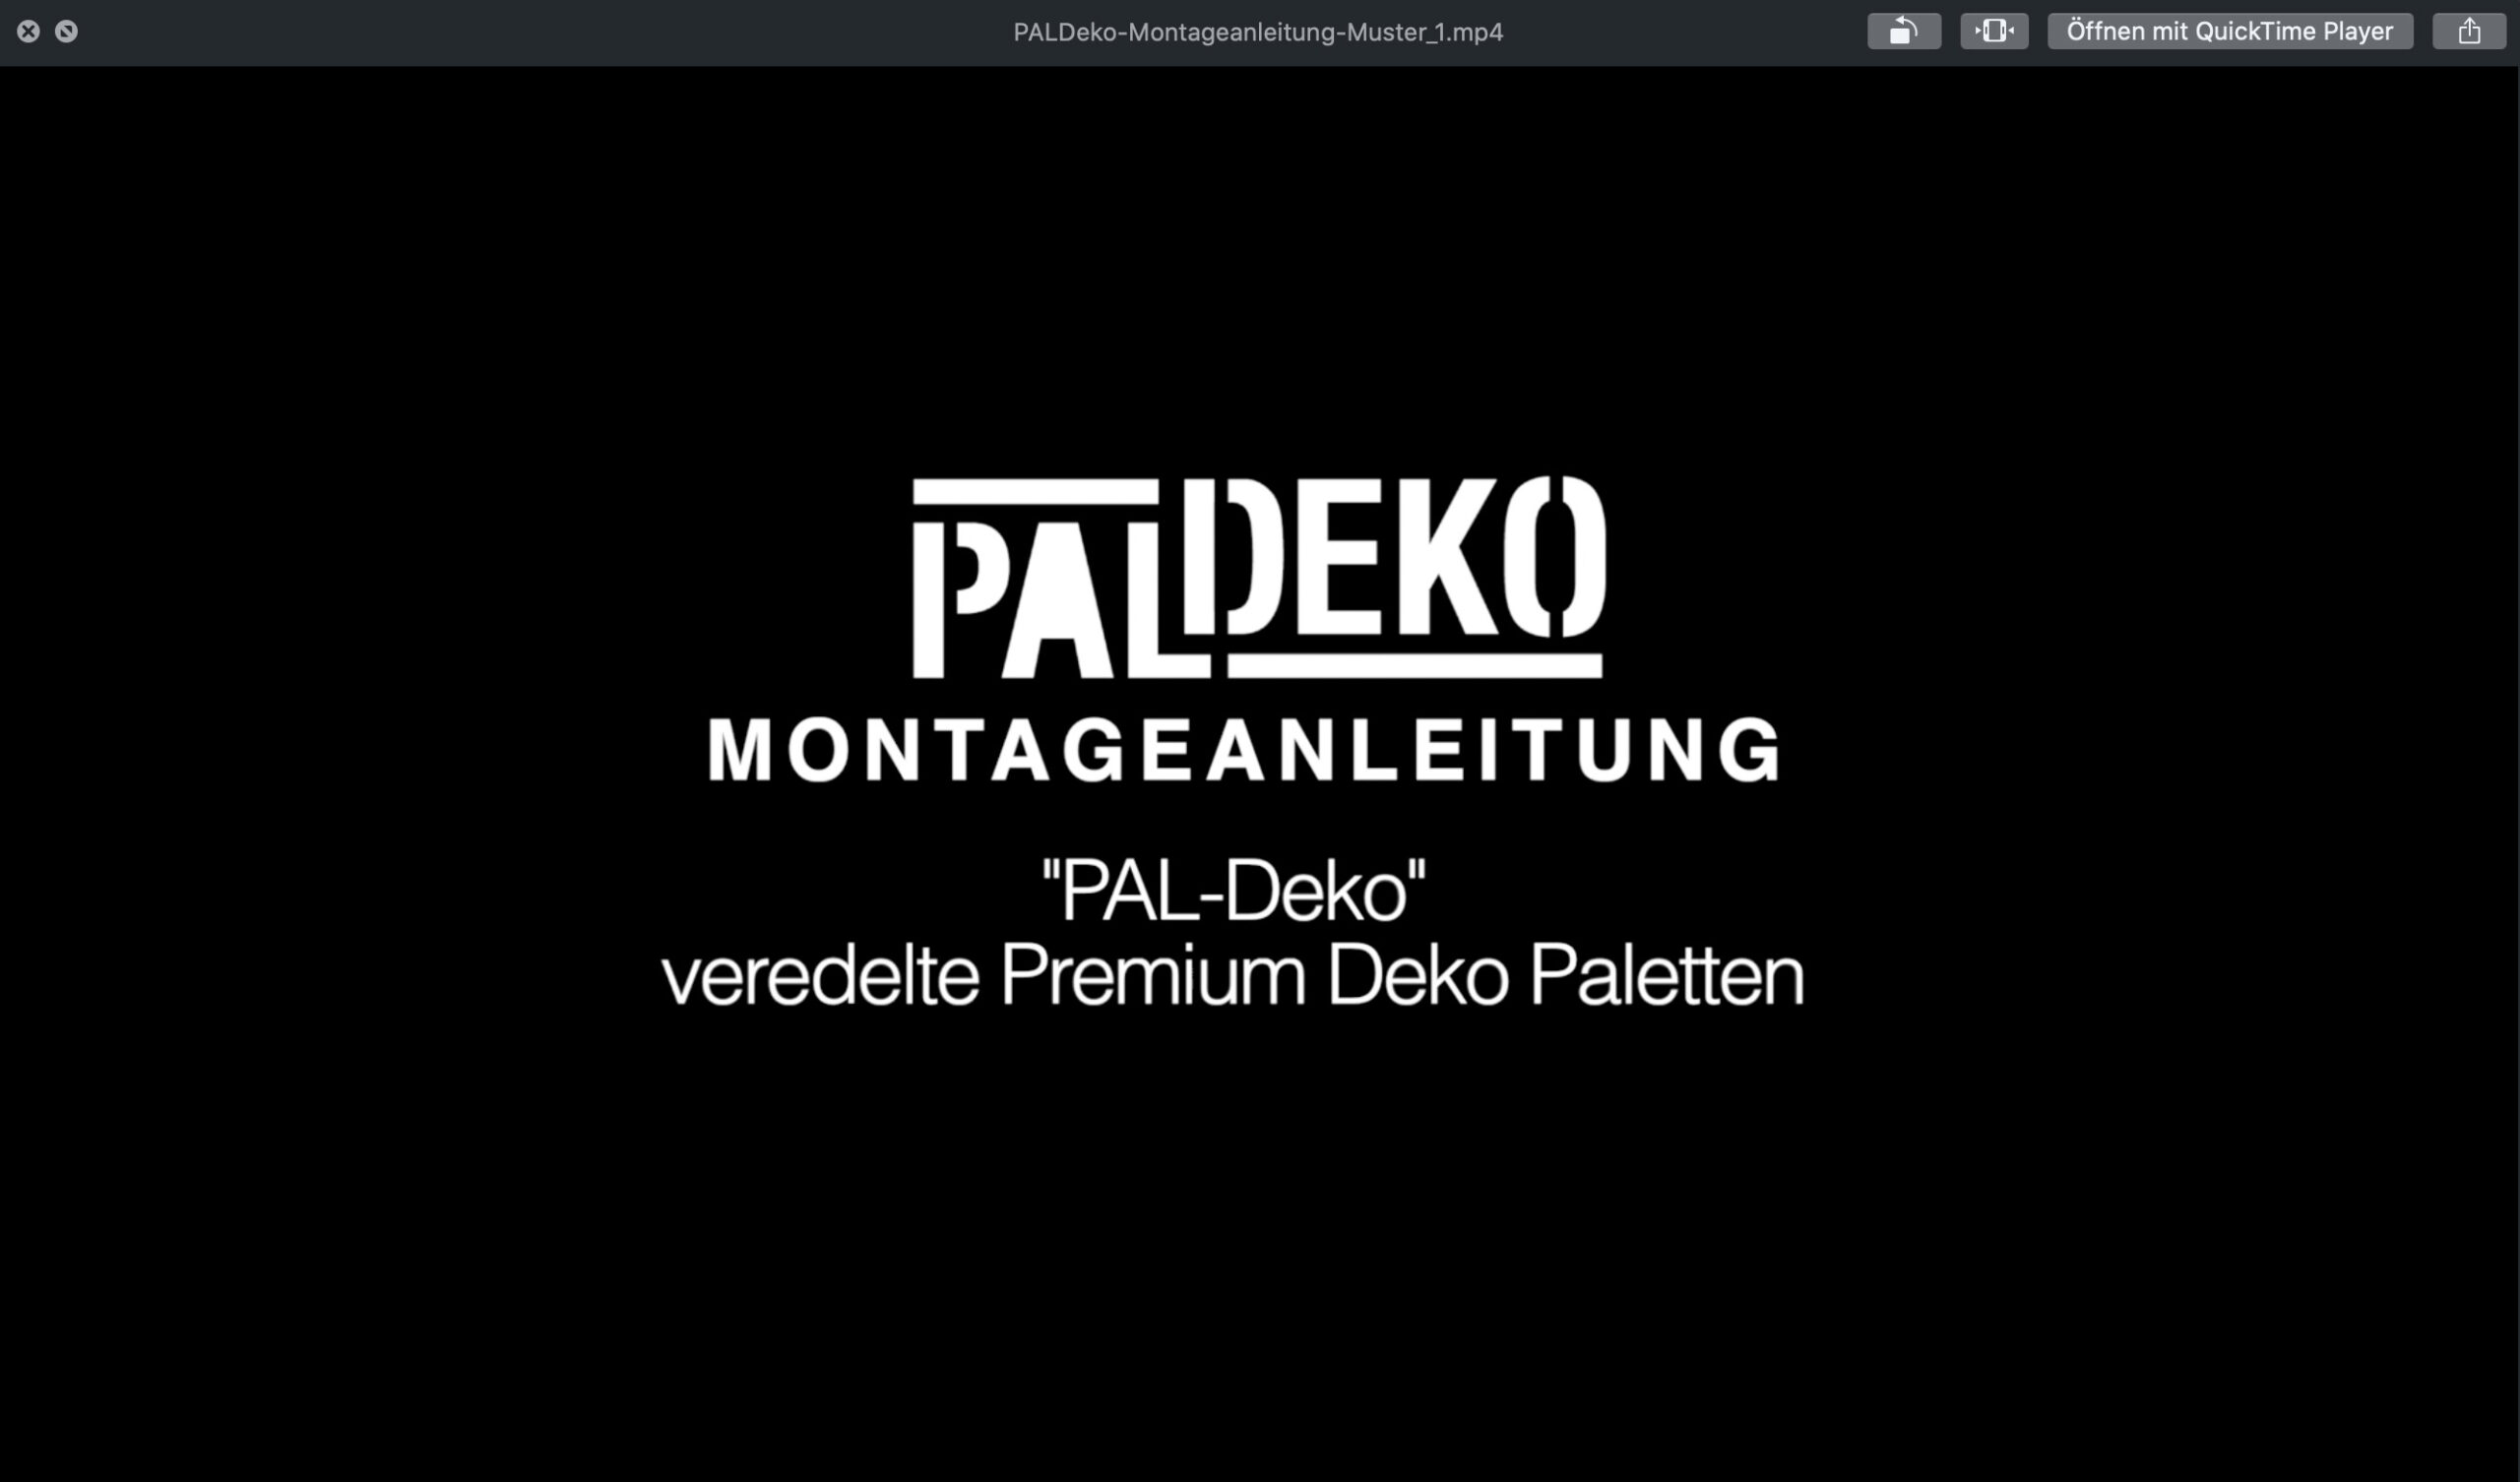 Logoentwicklung für Kunde "PALDEKO"